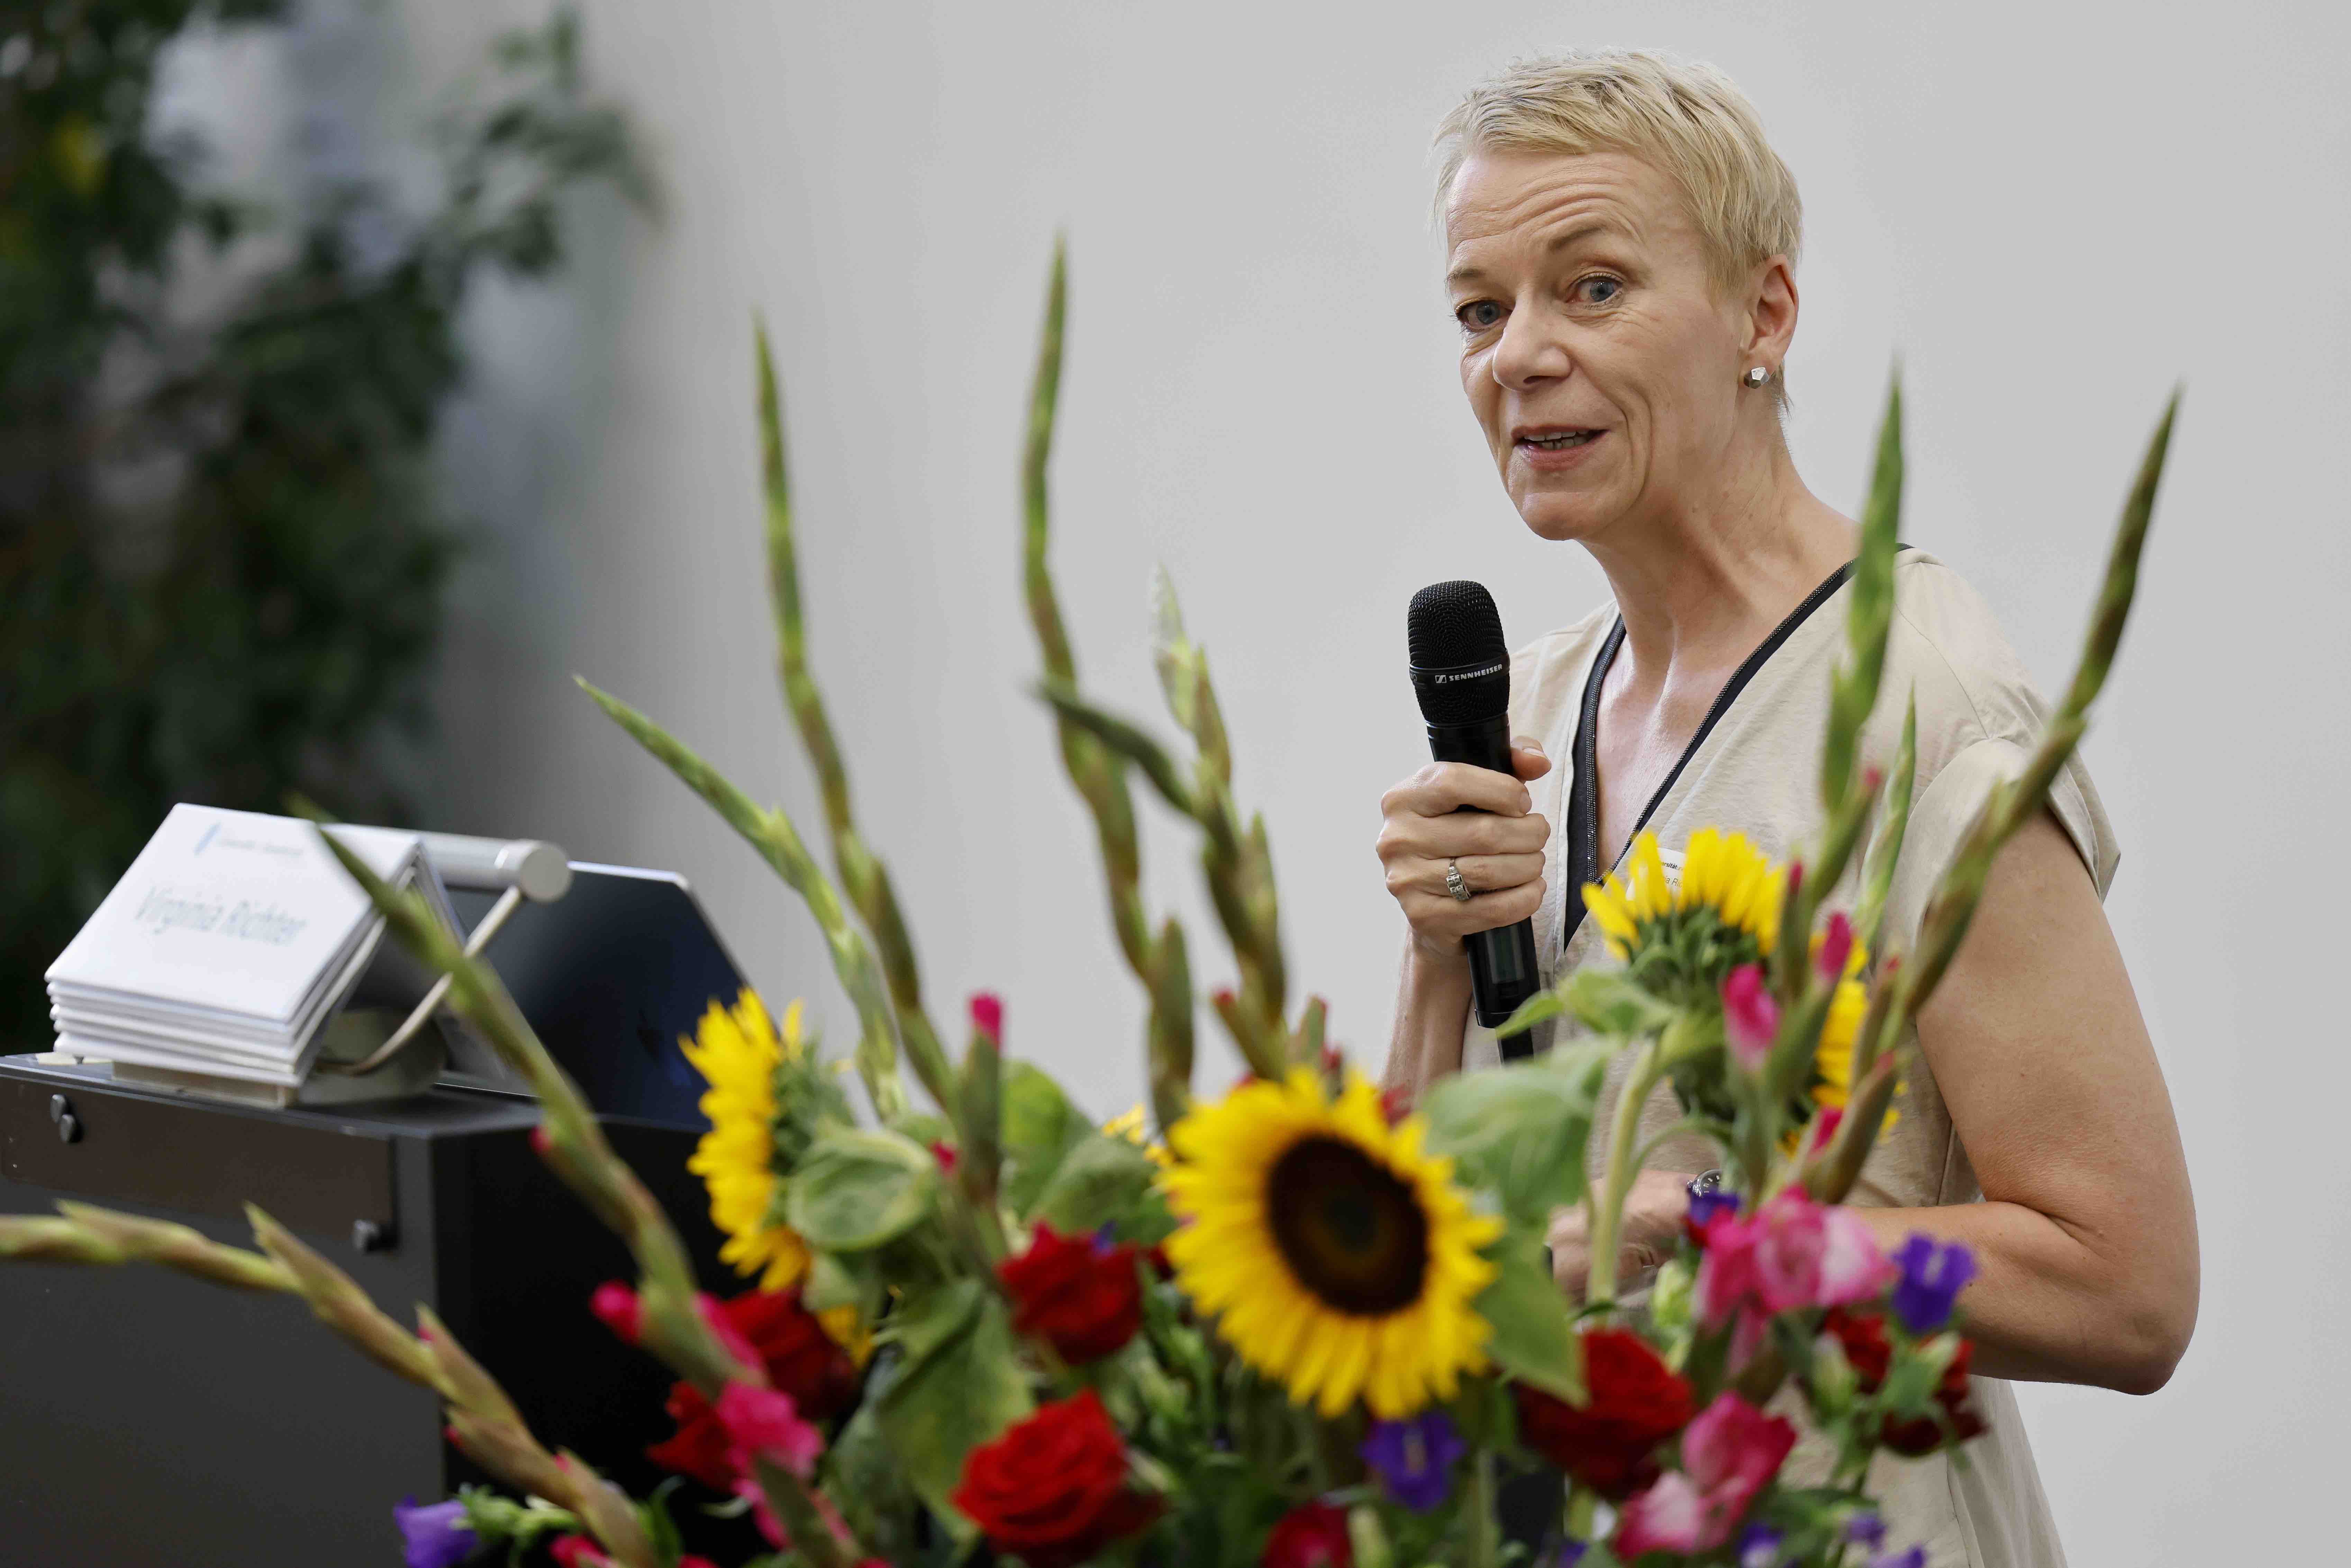 Forumspräsidentin Prof. Dr. Virginia Richter steht an einem Rednerpult und hält ein Mikrofon in der linken Hand. Im Vordergrund steht ein Blumenstrauss mit Sonnenblumen und pinken Gladiolen.